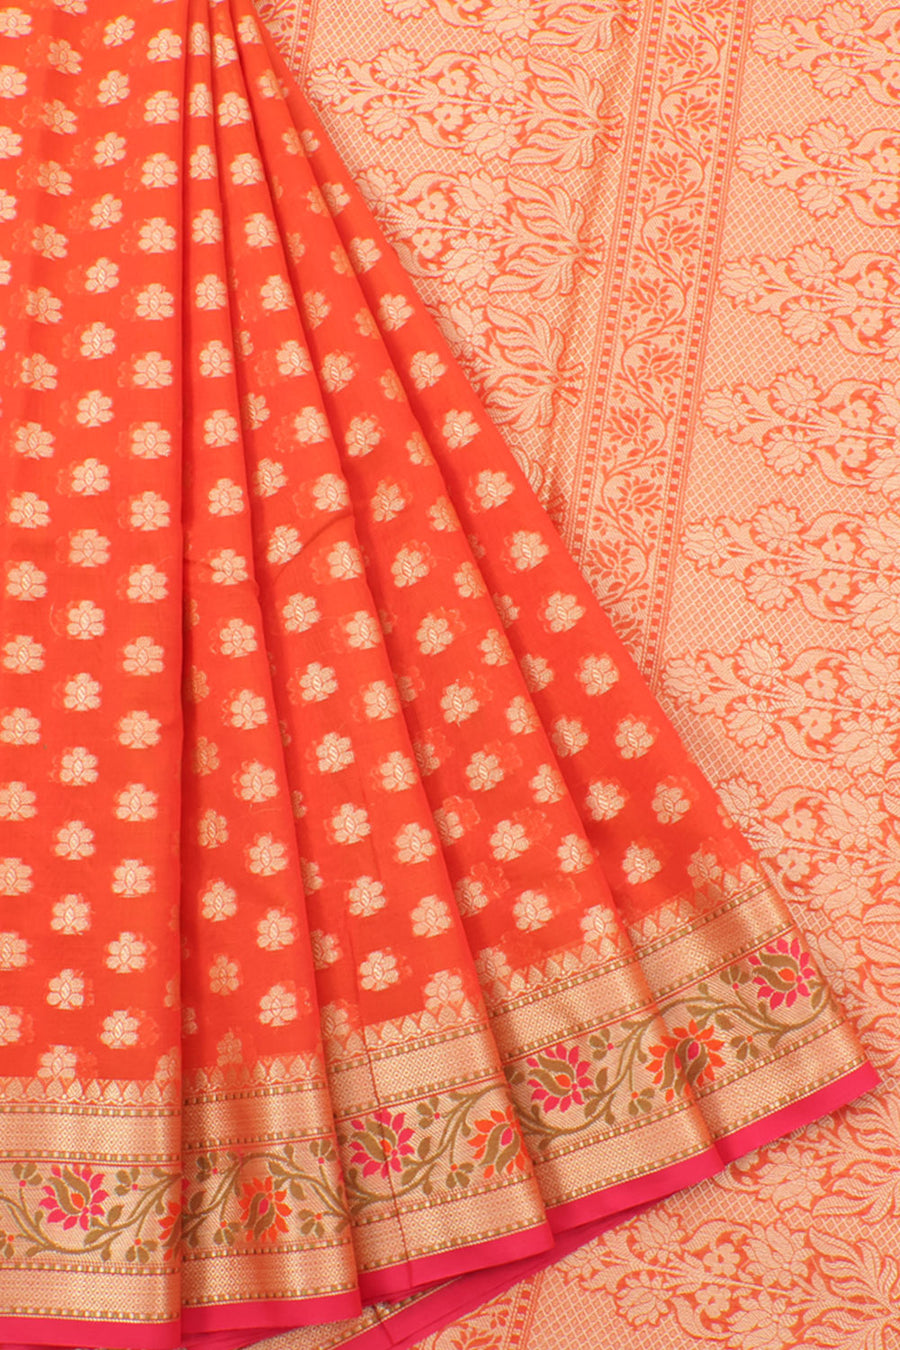 Banarasi Cotton Saree with Floral Motifs Design and Brocade Blouse